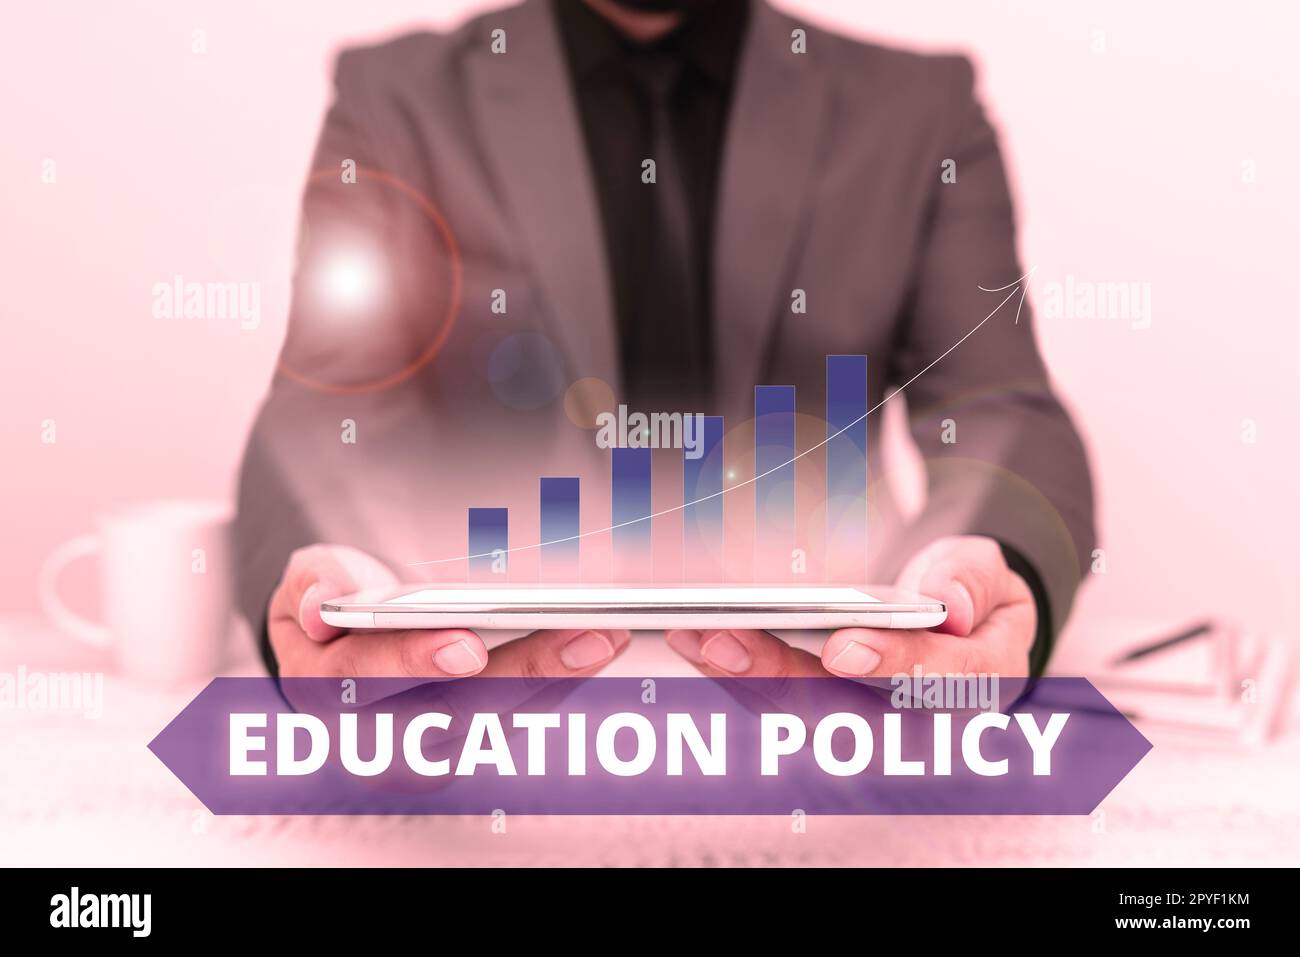 Affiche textuelle indiquant la politique de formation. Domaine d'étude des idées commerciales qui traite des méthodes d'enseignement et d'apprentissage Banque D'Images